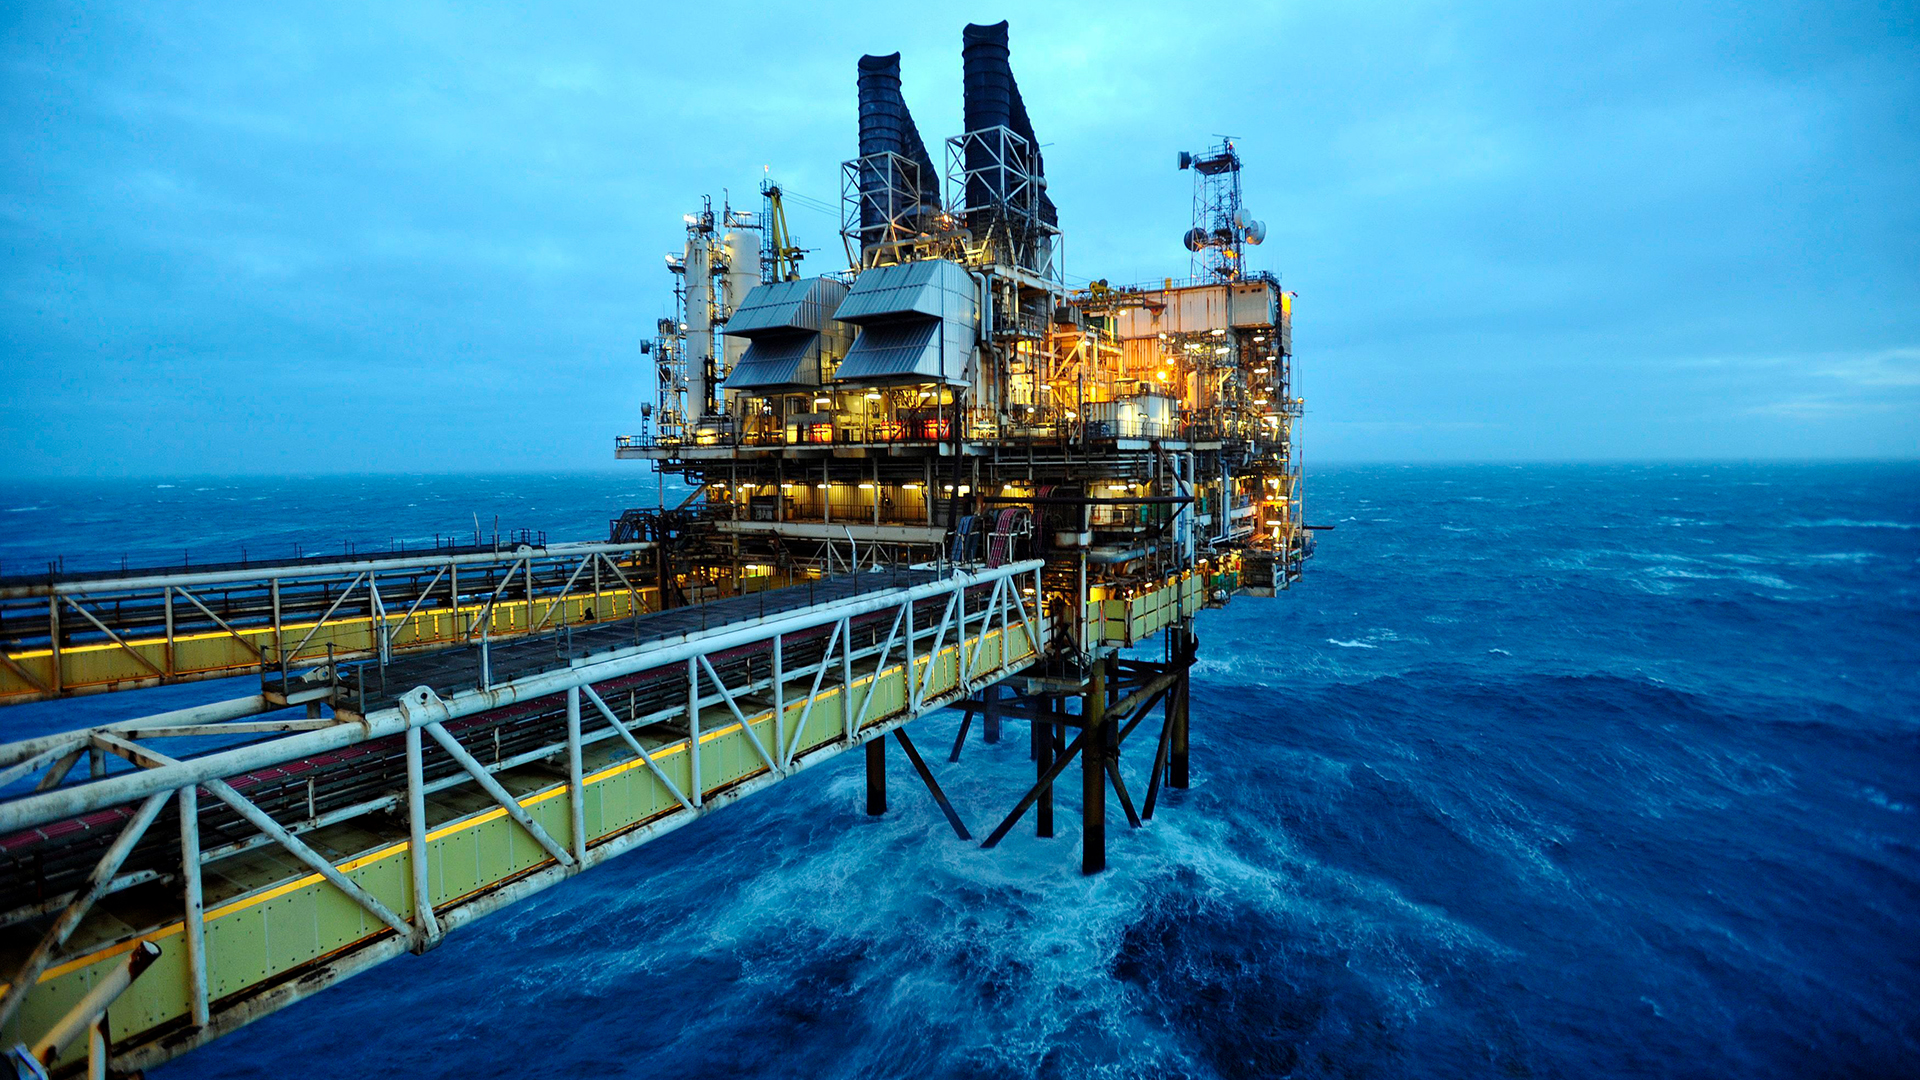 Blick auf einen Teil der BP-ETAP-Plattform in der Nordsee. | picture alliance / empics